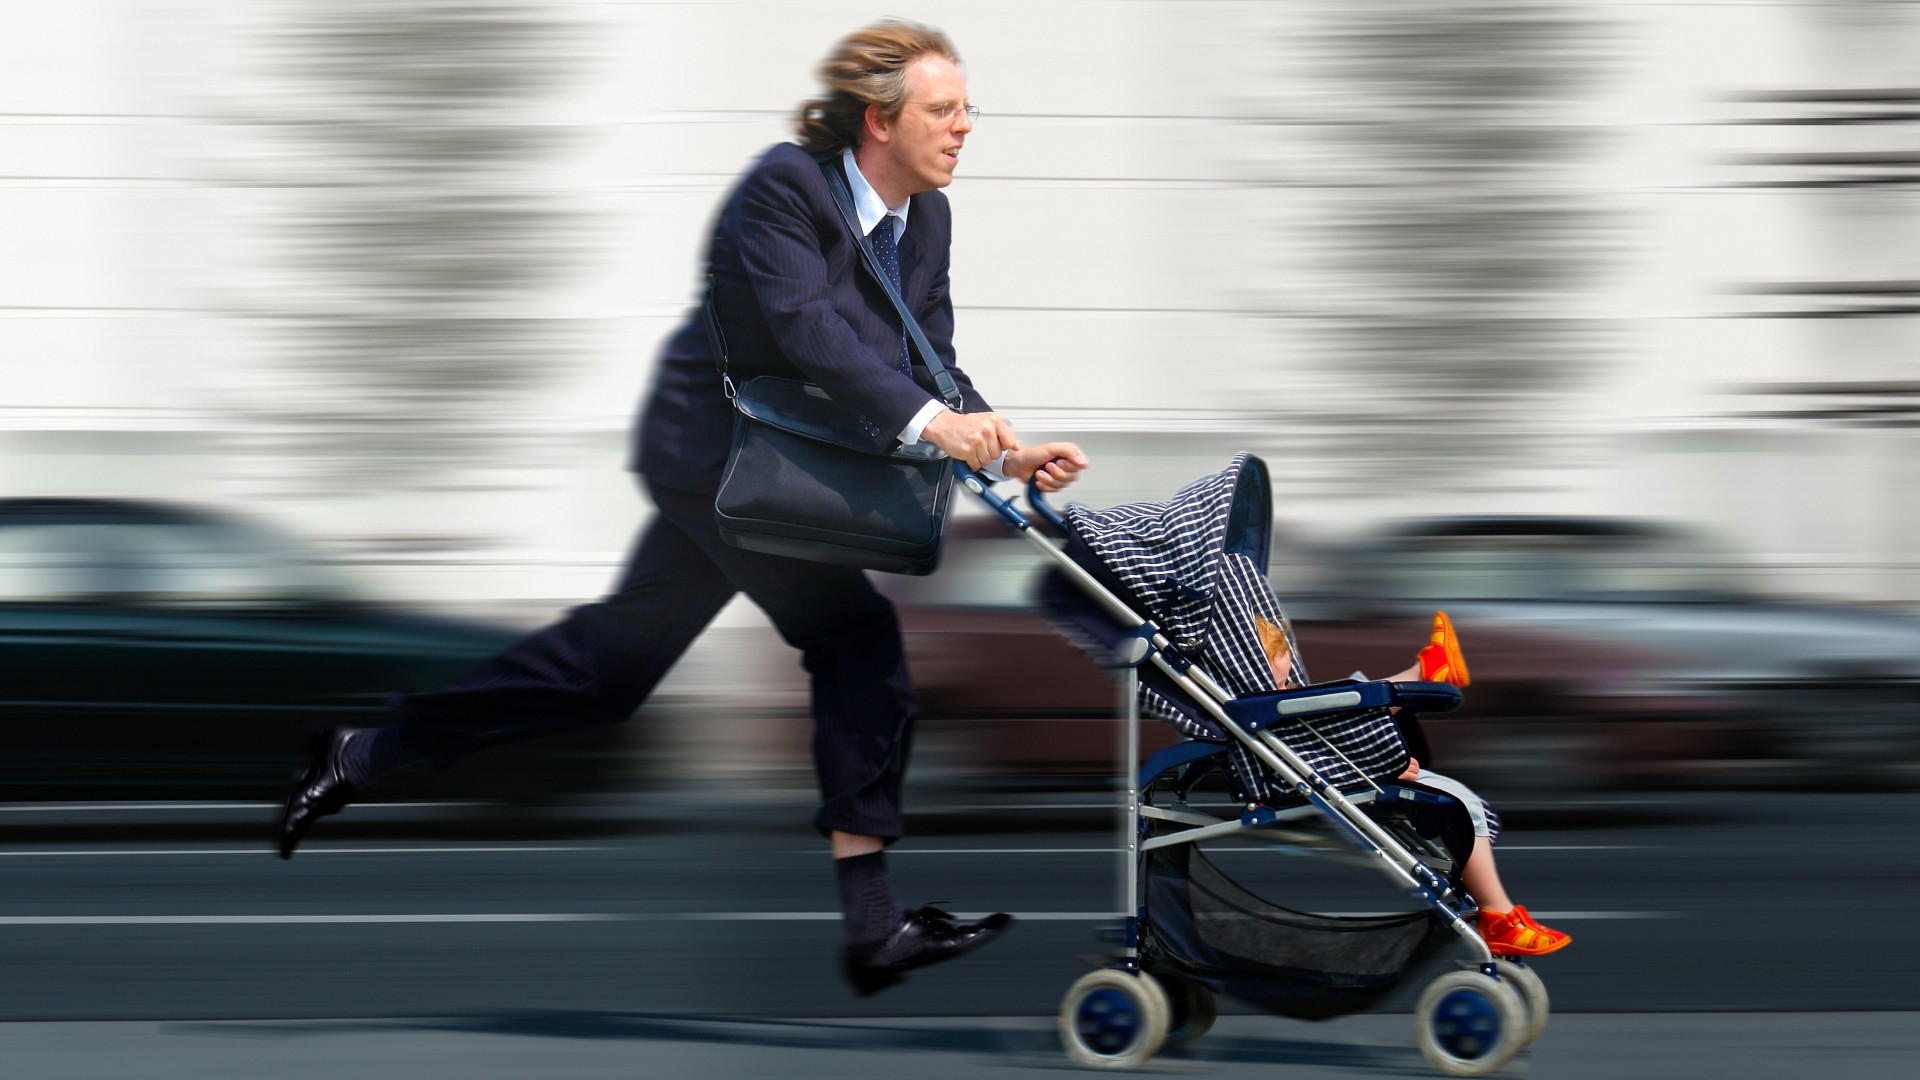 Vater rennt mit Kind im Kinderwagen zur Arbeit.